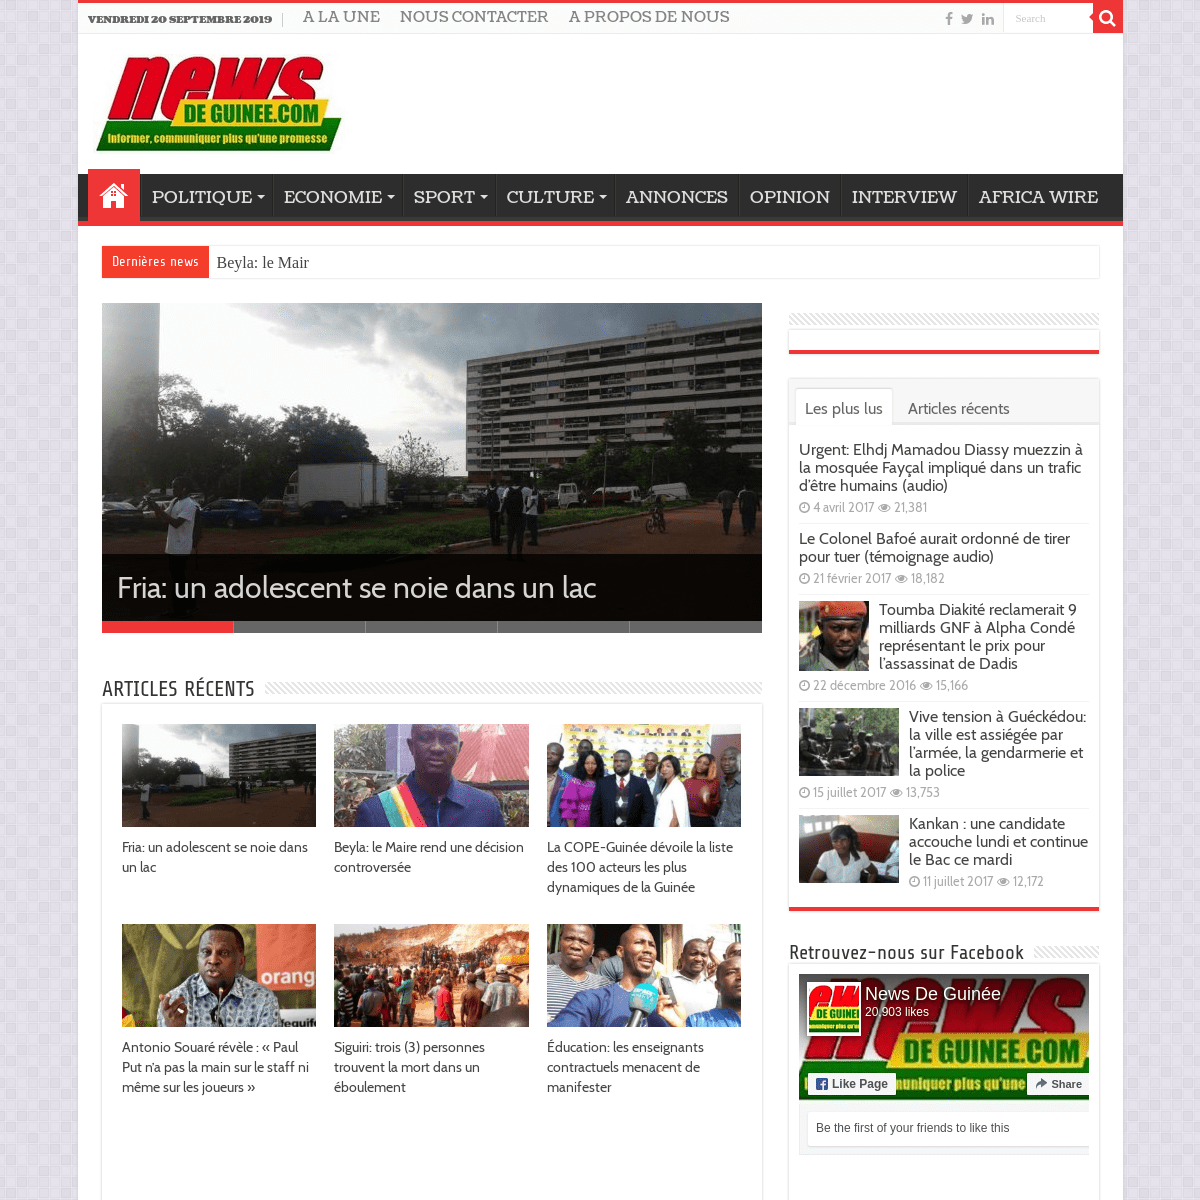 Accueil | News de Guinee.com